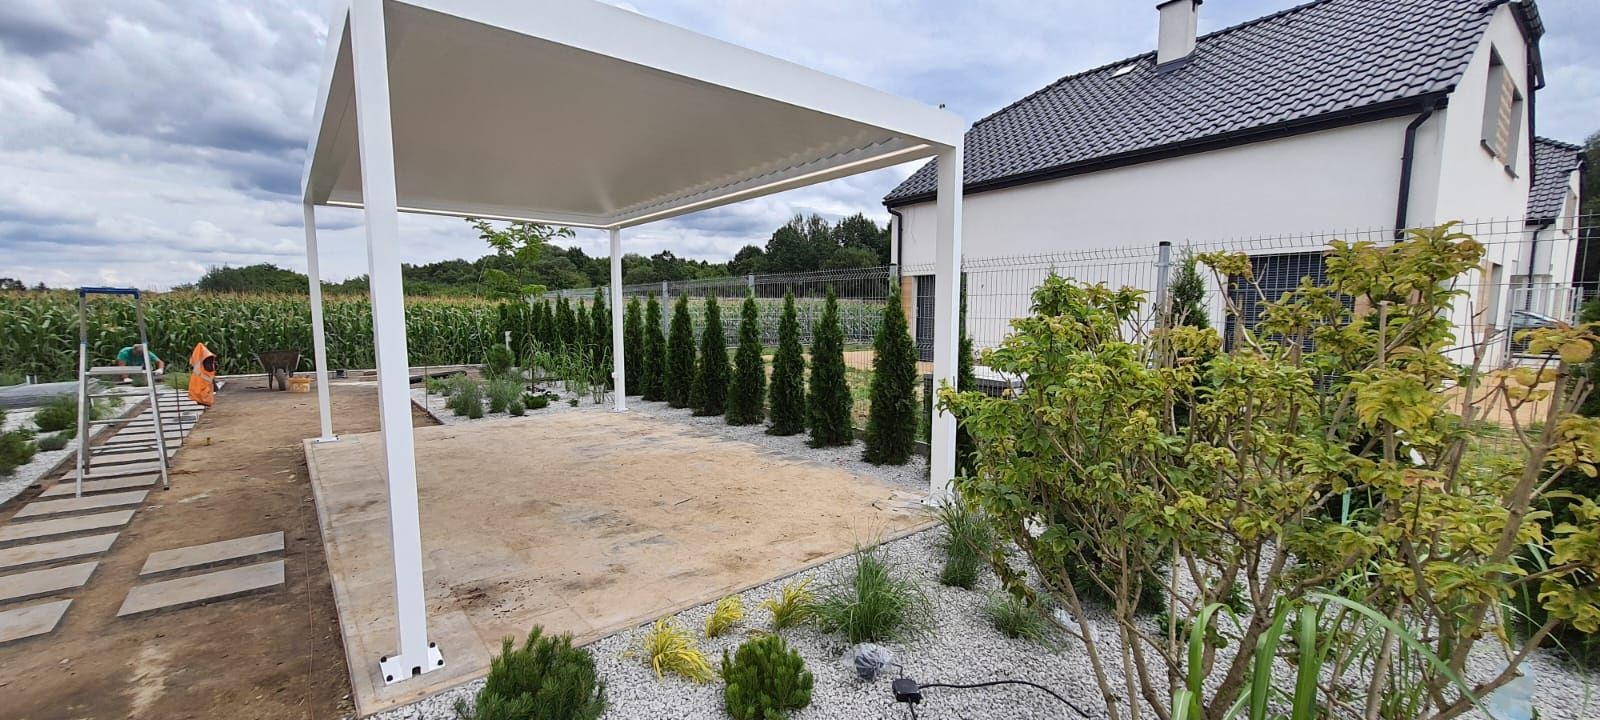 Pergola ogrodowa, nowoczesny design, elektryczna, bezpłatna wycena,